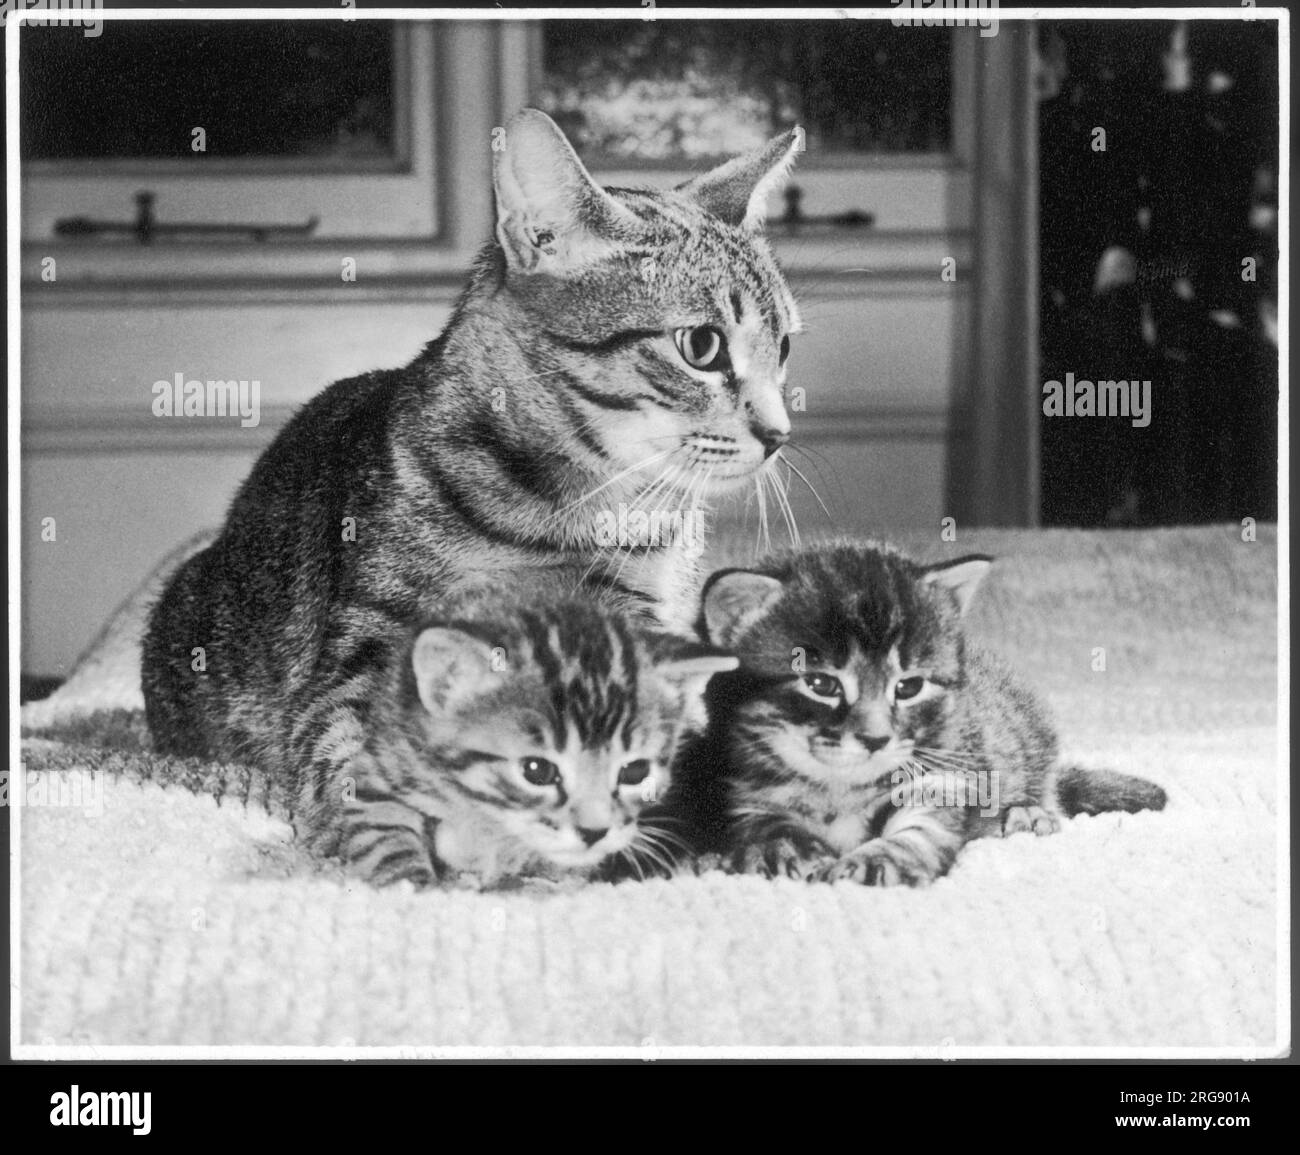 Un chat tabby de mère vigilant est assis sur un lit avec ses deux chatons tabby. Banque D'Images